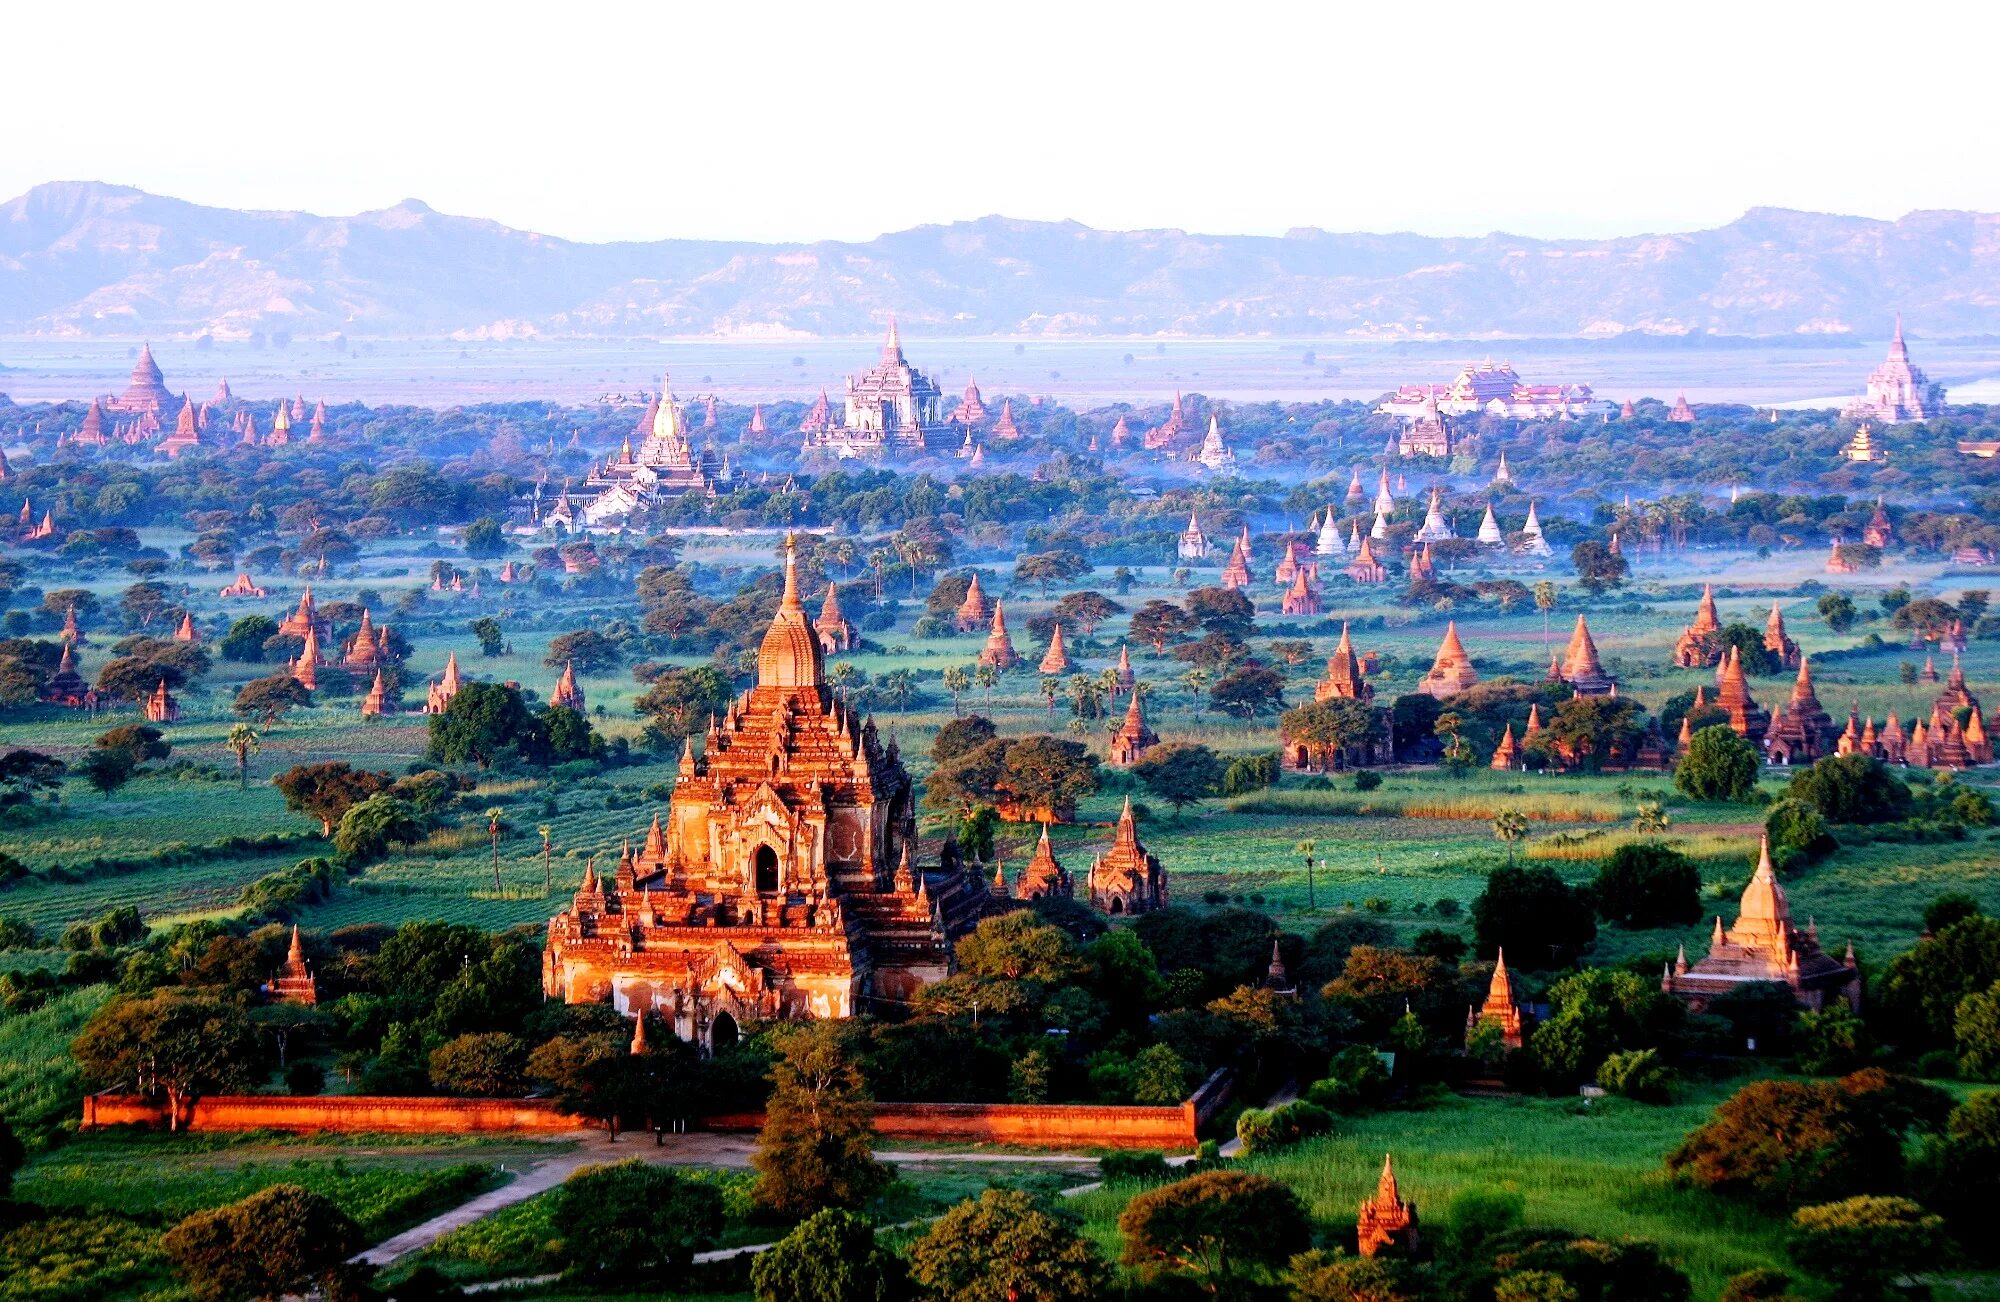 Страна 1000 городов. Паганское царство Мьянма. Паган (Баган), Мьянма. Древняя столица Баган, Мьянма. Храмы в Багане (Паган).